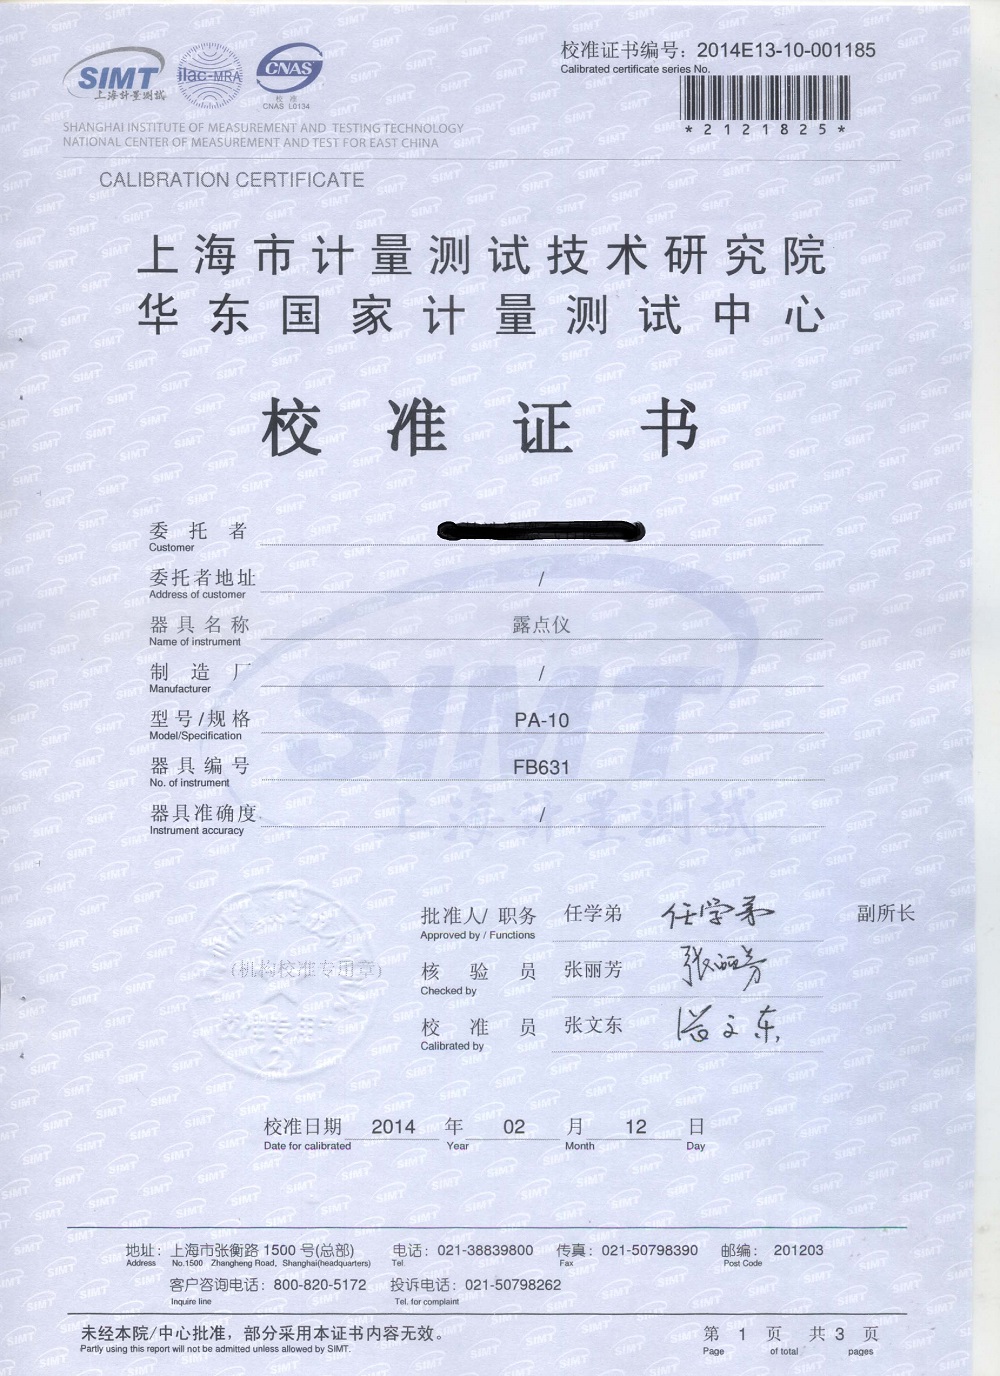 校准证书-上海计量测试技术研究院